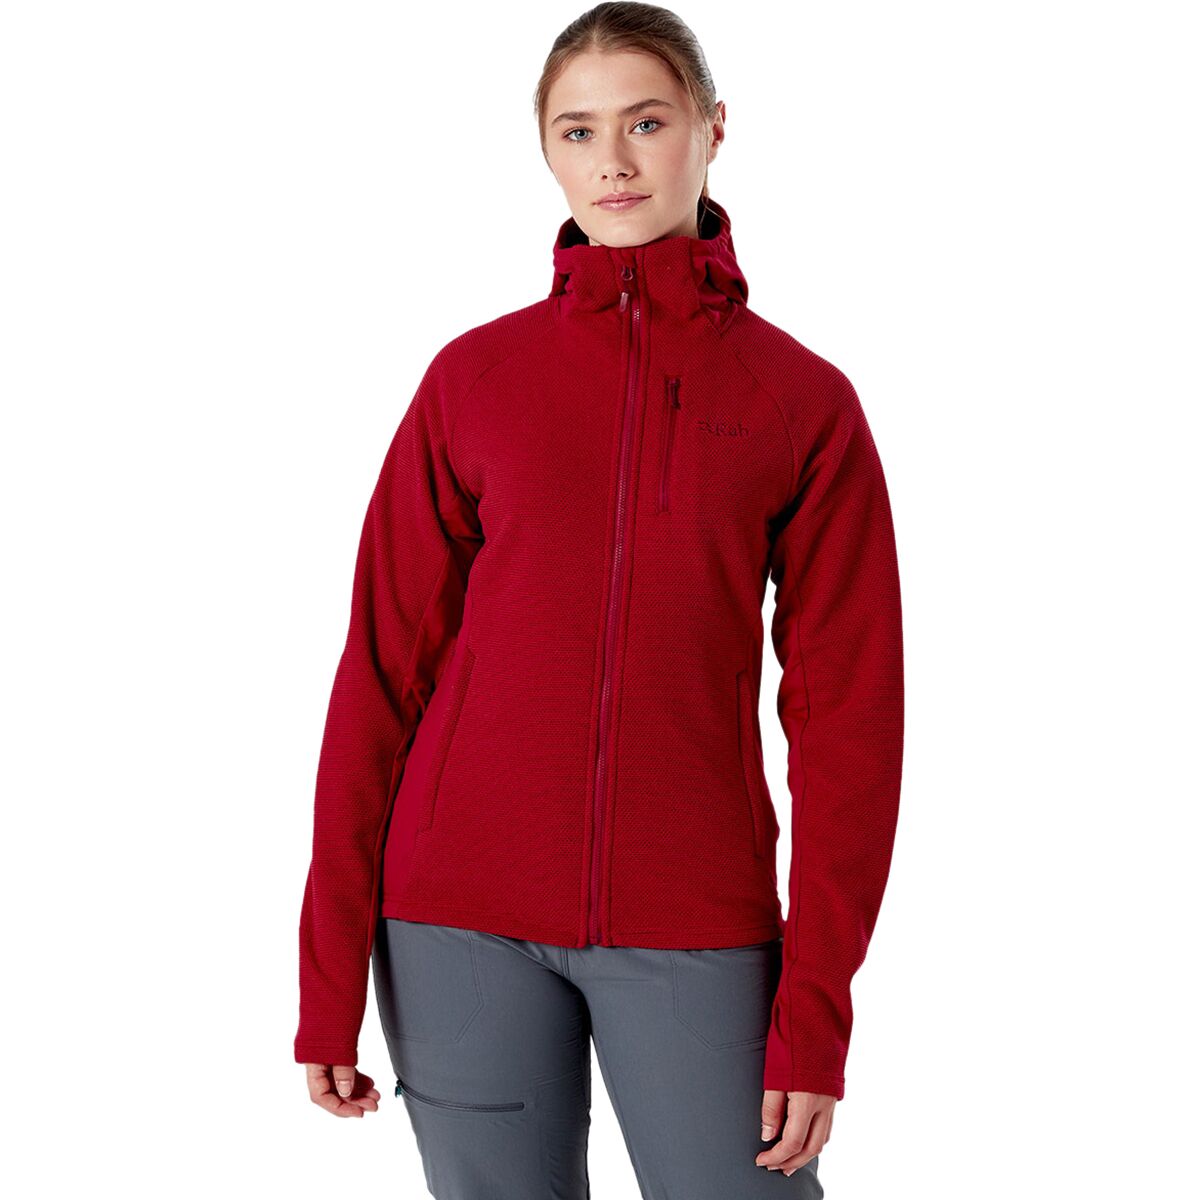 Rab Capacitor Hooded Fleece Jacket - Women's